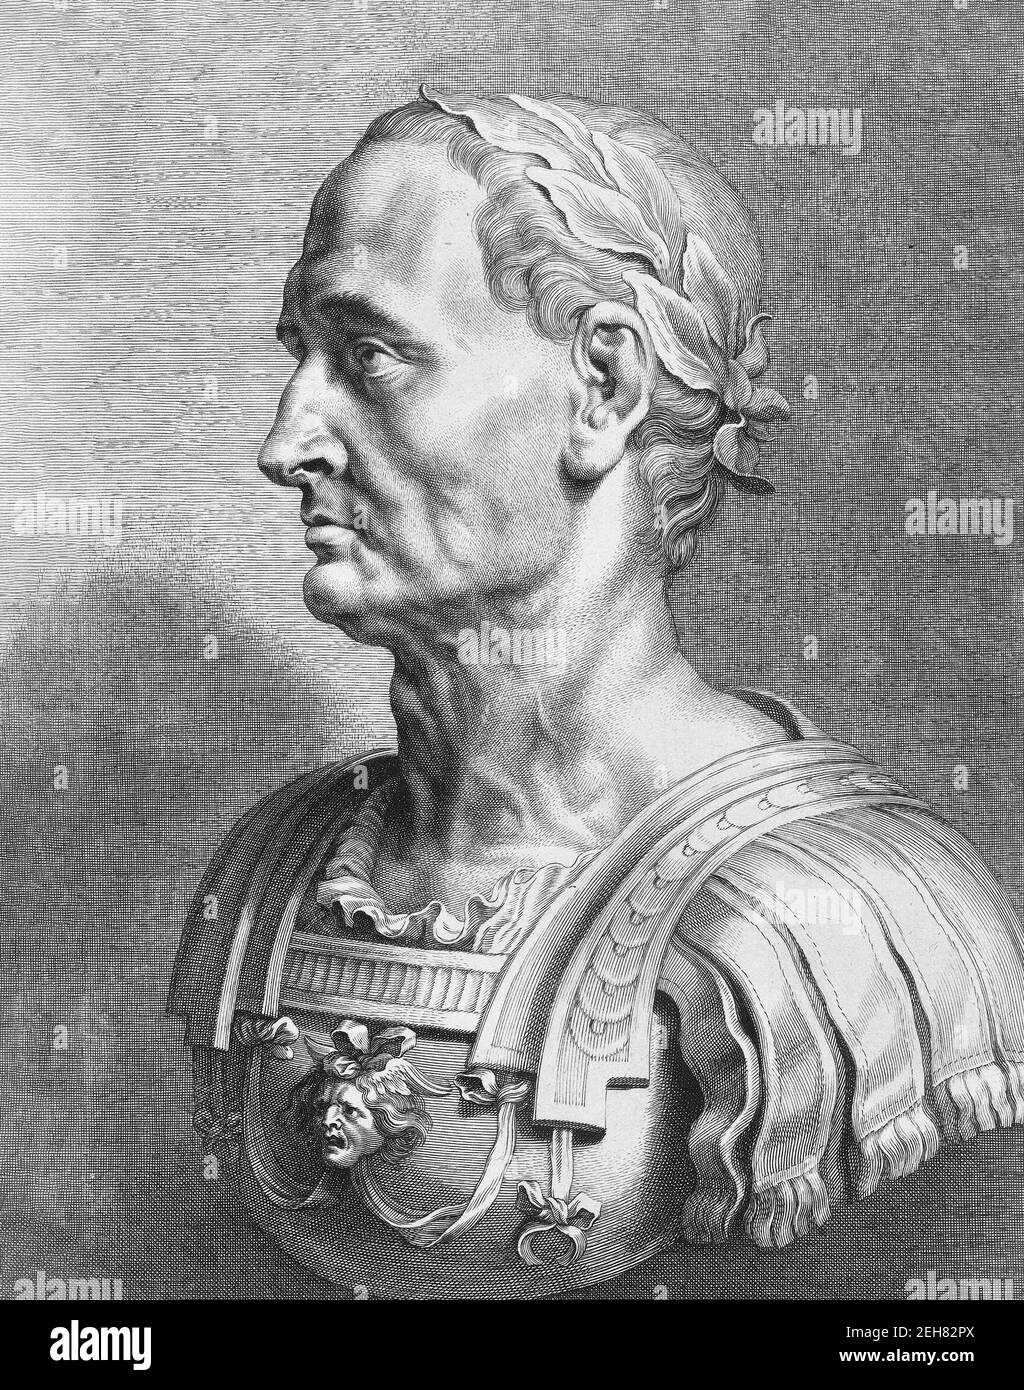 Julius Caesar. Portrait of the Roman dictator, Julius Caesar (100 BC - 44 BC), 17th century engraving of a marble bust Stock Photo